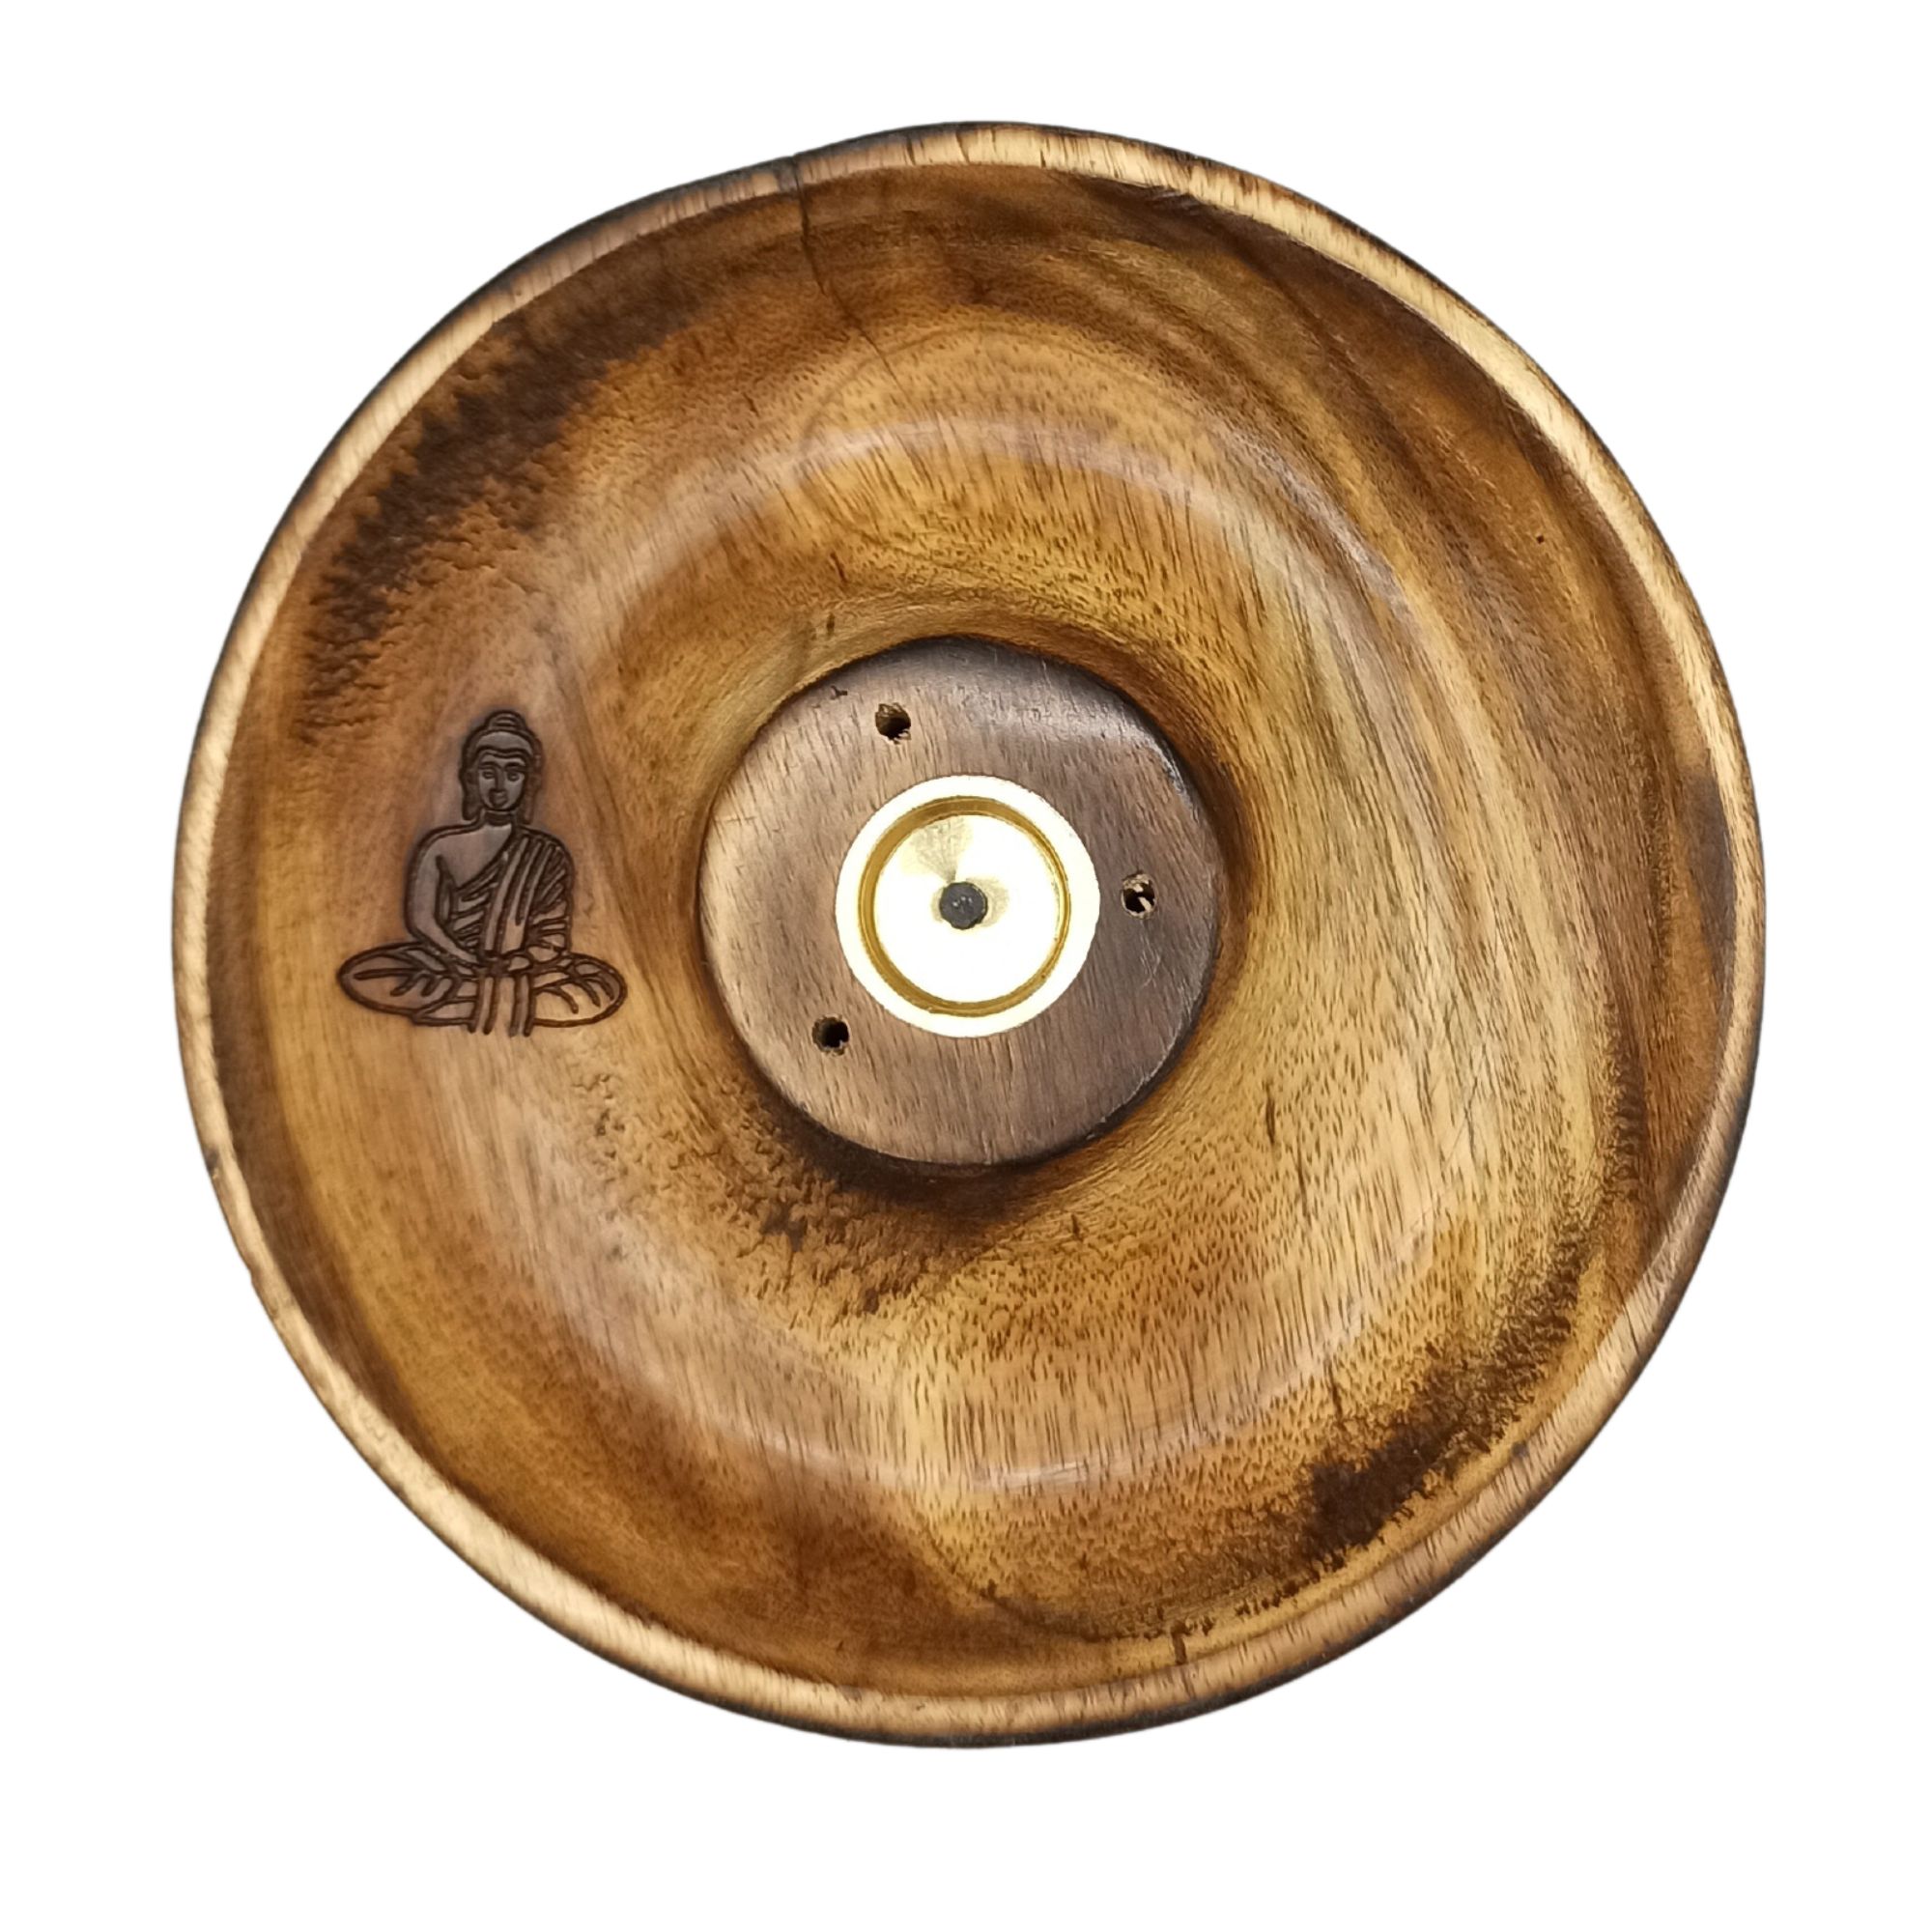 Incense Stick & Cone Burner Disc - Buddha